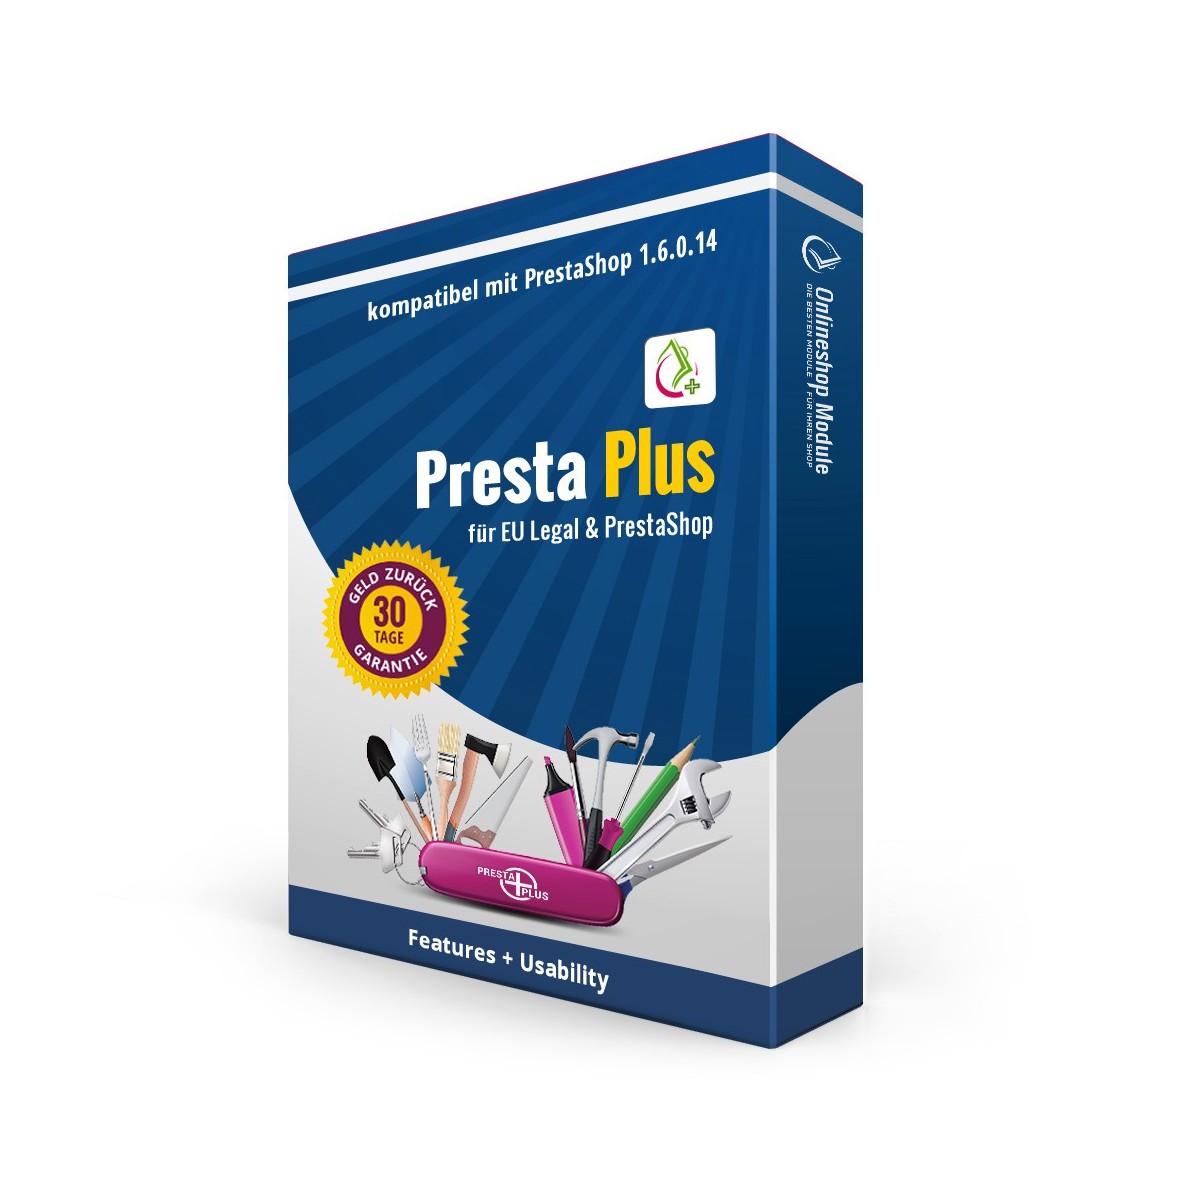 Presta Plus für PrestaShop 1.6.0.14